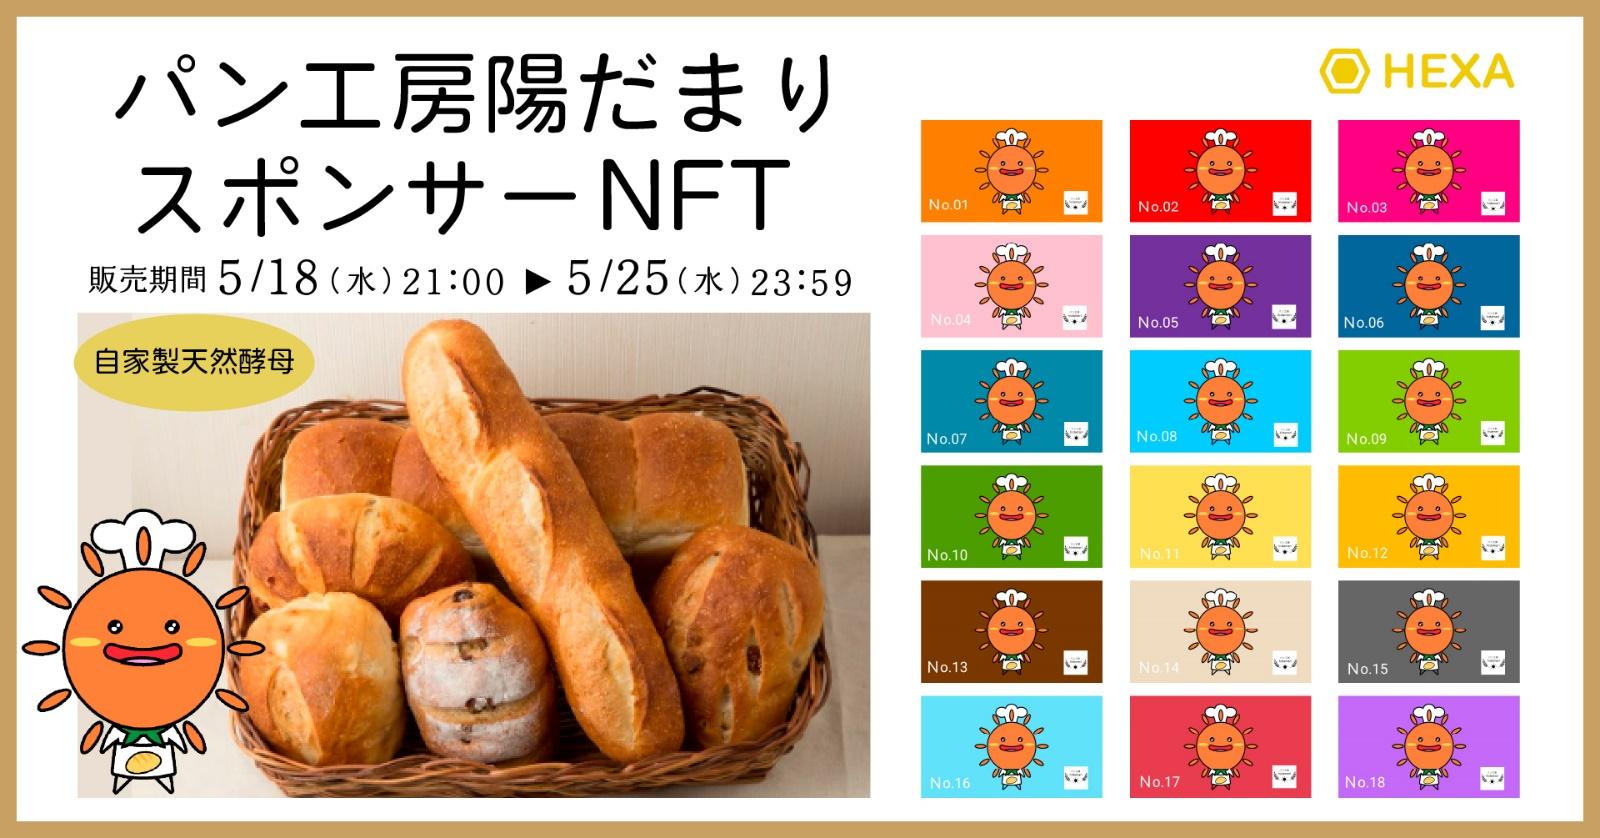 福島県鏡石町の「パン工房陽だまり」がイメージキャラクターを使った商品のスポンサーNFTを発行し、WEB3.0マーケティング施策を実施